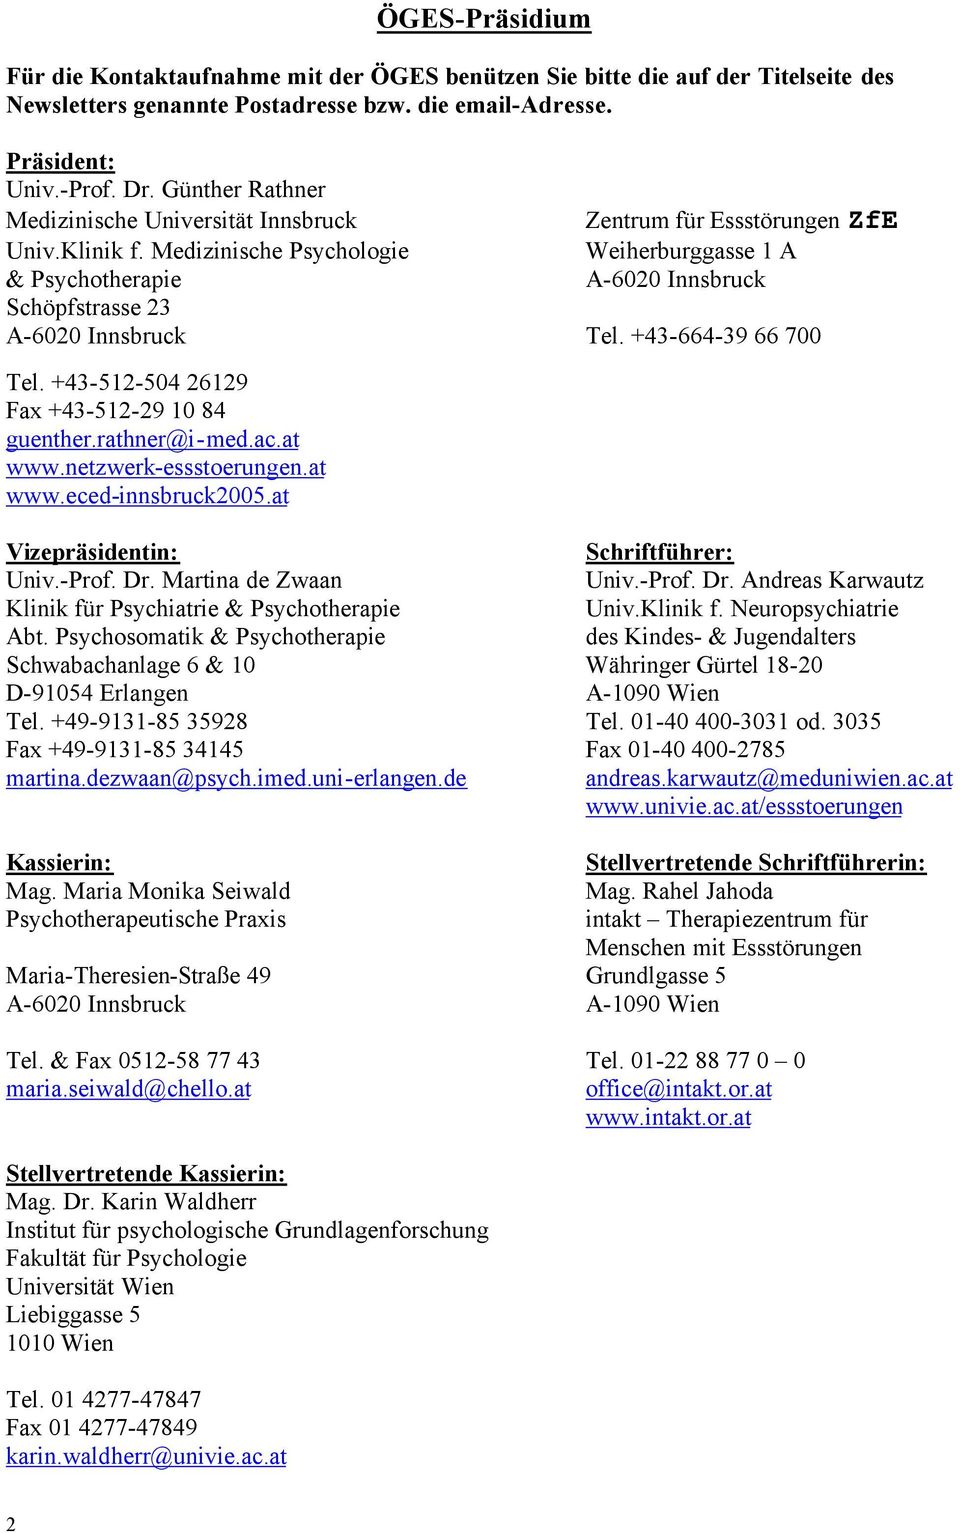 Medizinische Psychologie Zentrum für Essstörungen ZfE Weiherburggasse 1 A A-6020 Innsbruck & Psychotherapie Schöpfstrasse 23 A-6020 Innsbruck Tel. +43-664-39 66 700 Tel.